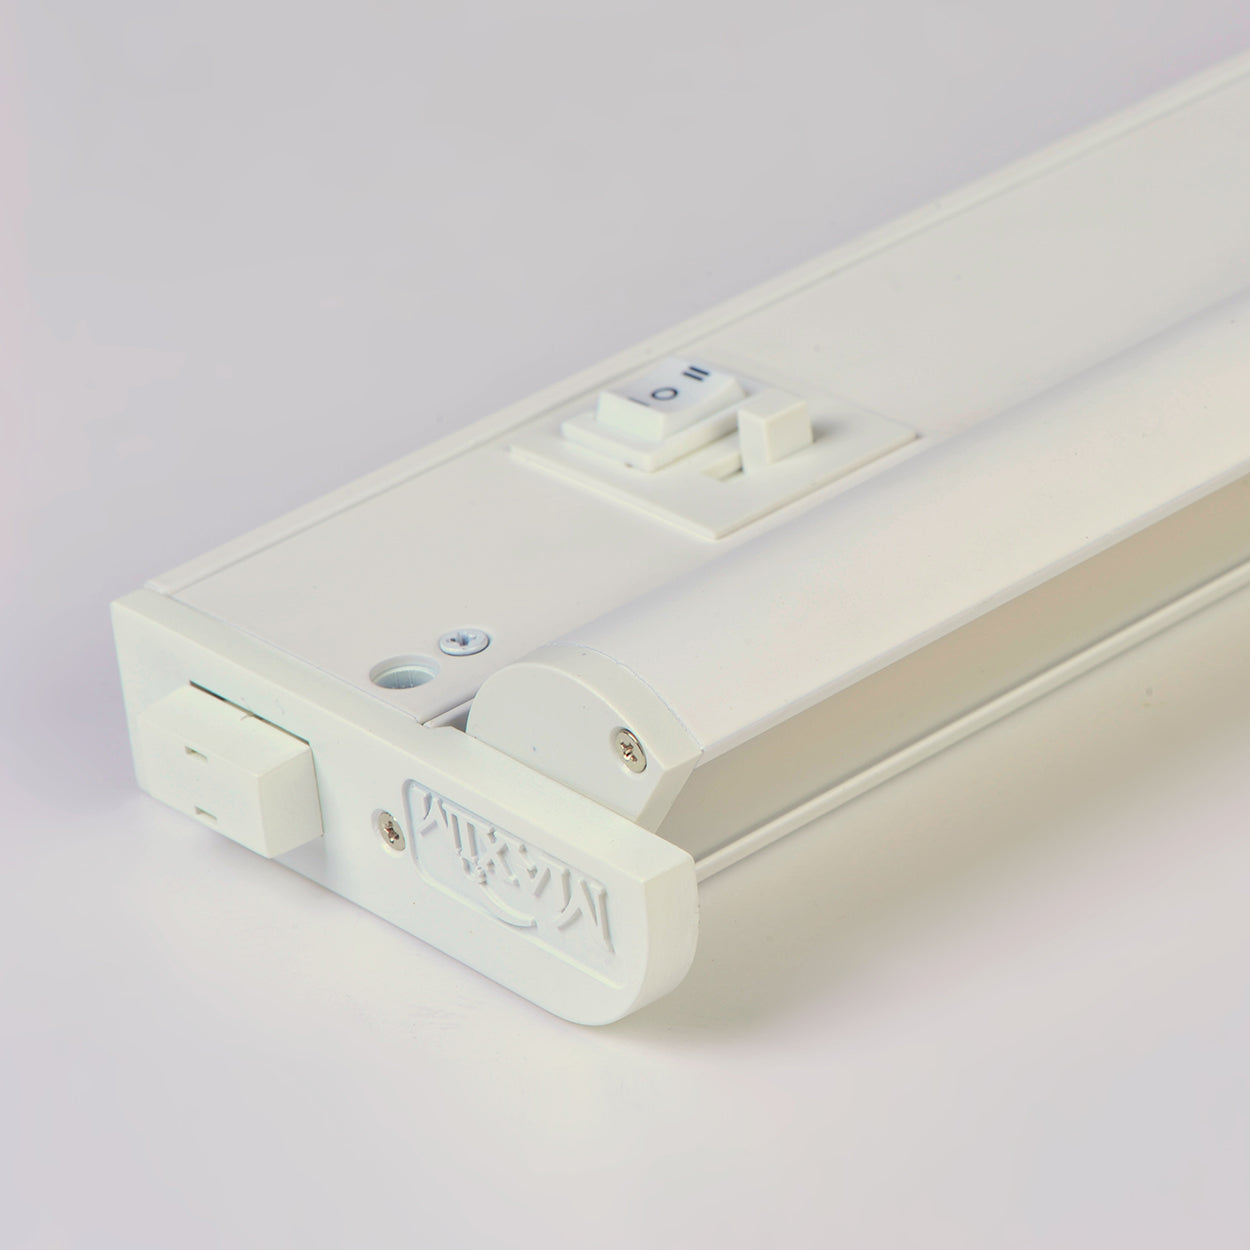 89862WT - CounterMax 5K 6'' 2700-5000K LED Under Cabinet - White